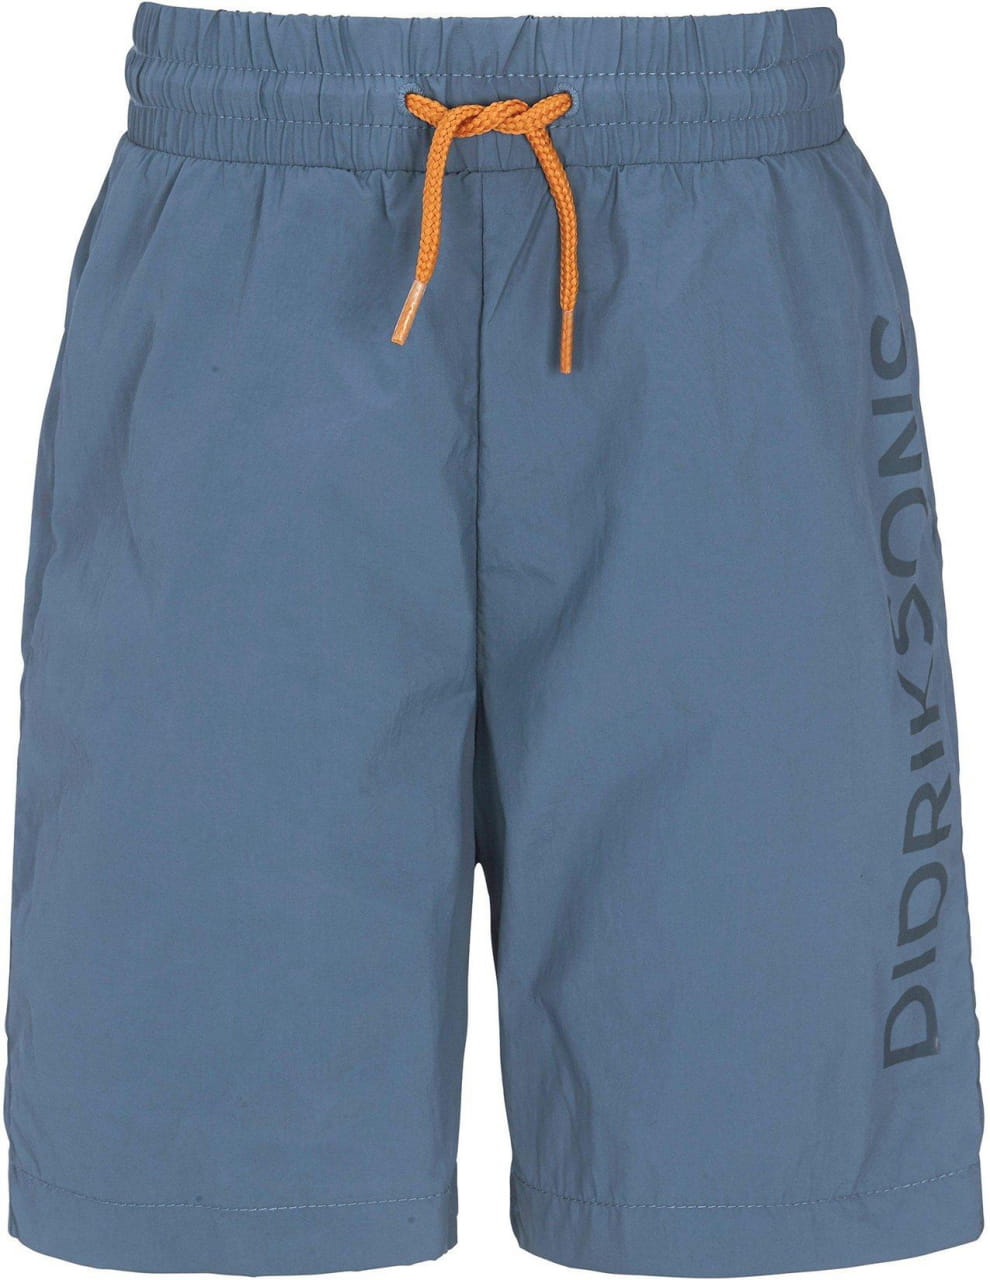 Pantaloncini per bambini Didriksons Castor Kids' Shorts